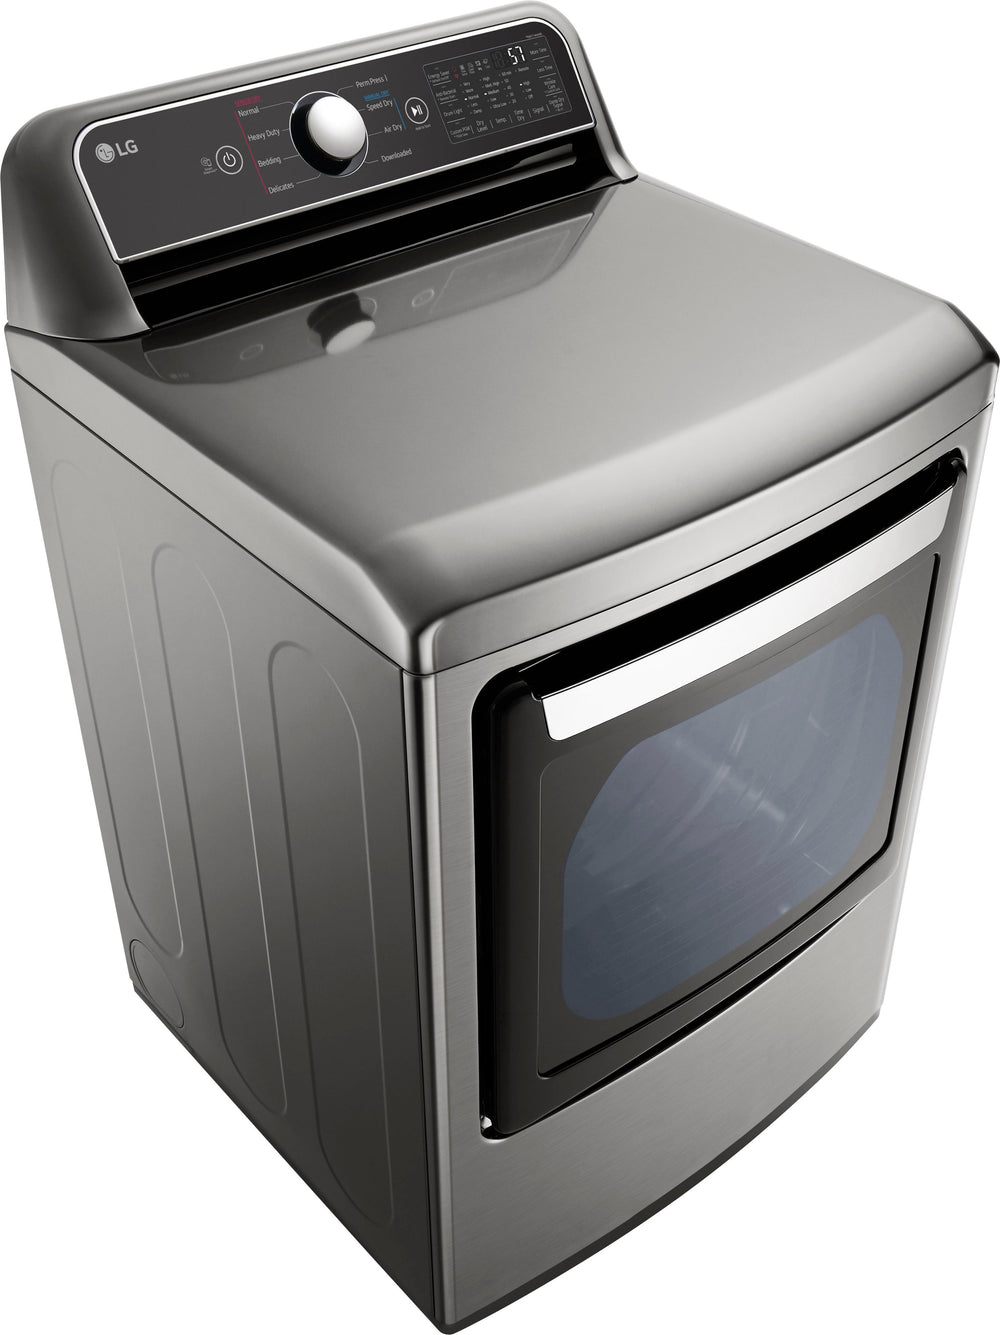 LG - 7.3 Cu. Ft. Smart Gas Dryer with EasyLoad Door - Graphite steel_1